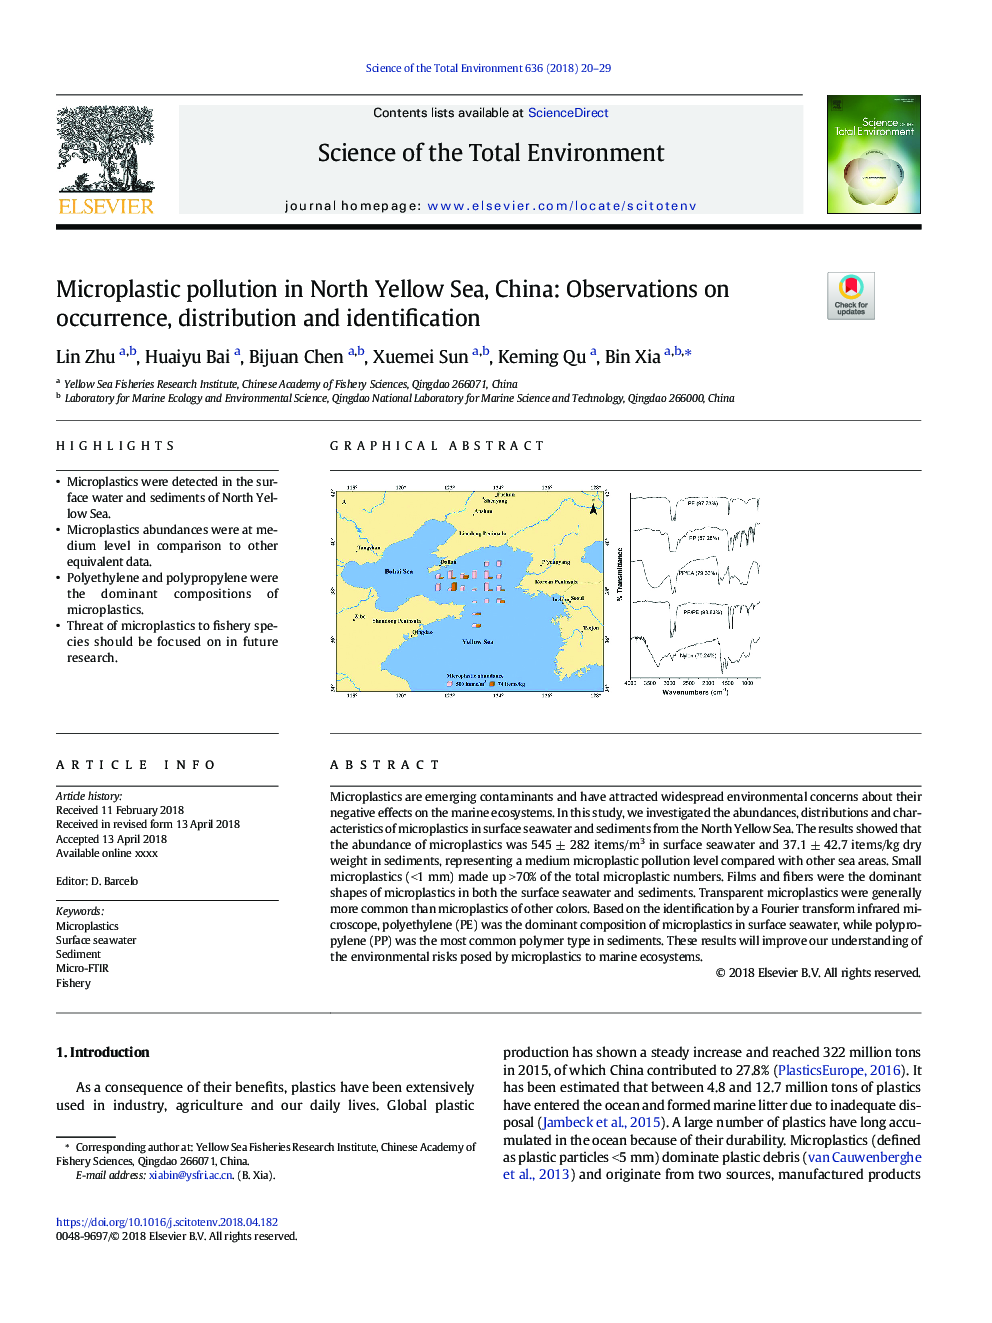 آلودگی میکرو پلاستیک در دریای شمال زا، چین: مشاهدات مربوط به وقوع، توزیع و شناسایی 